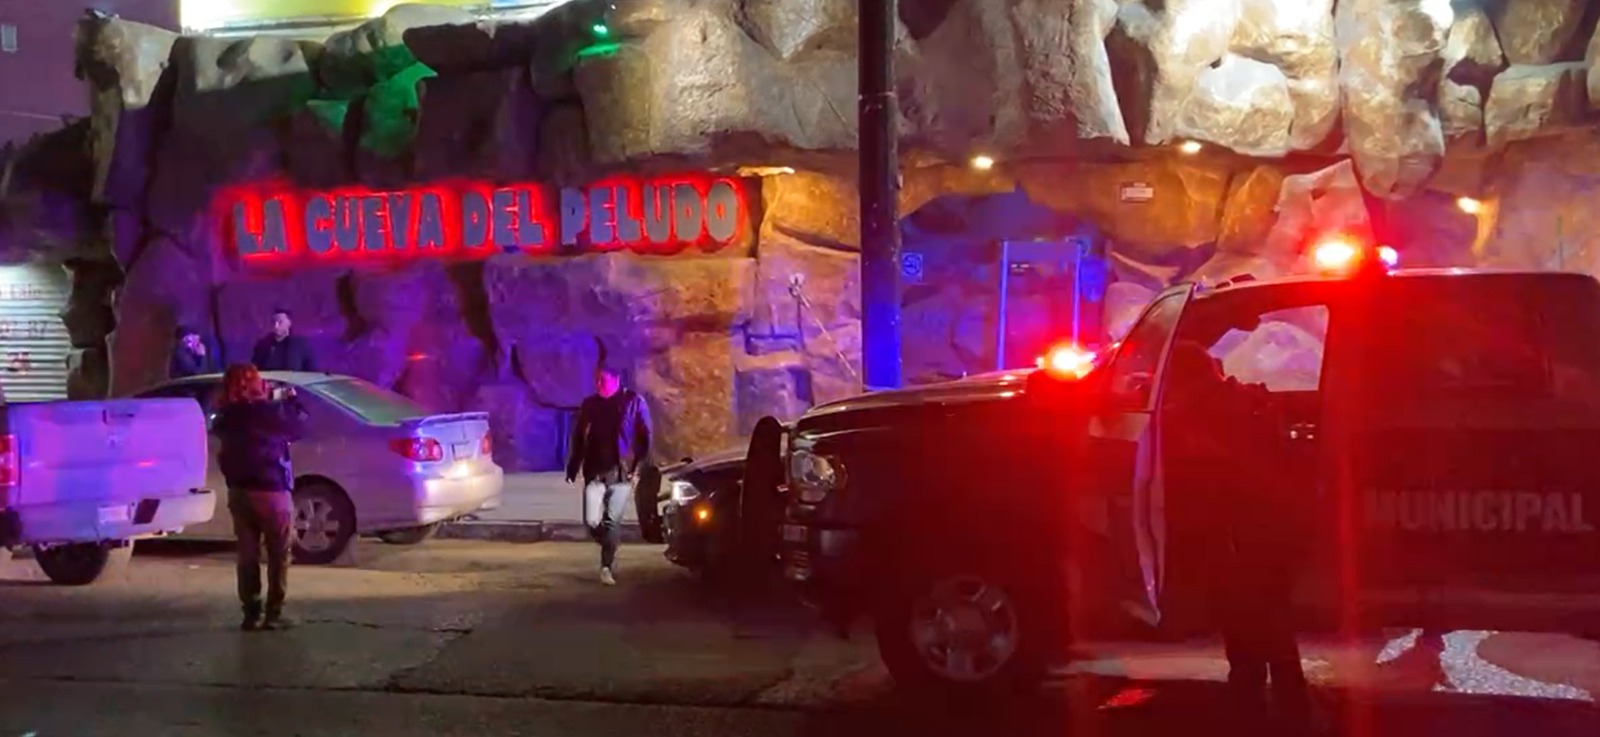 [VIDEO] Ejecutan a un hombre en “La Cueva del Peludo”: Tijuana